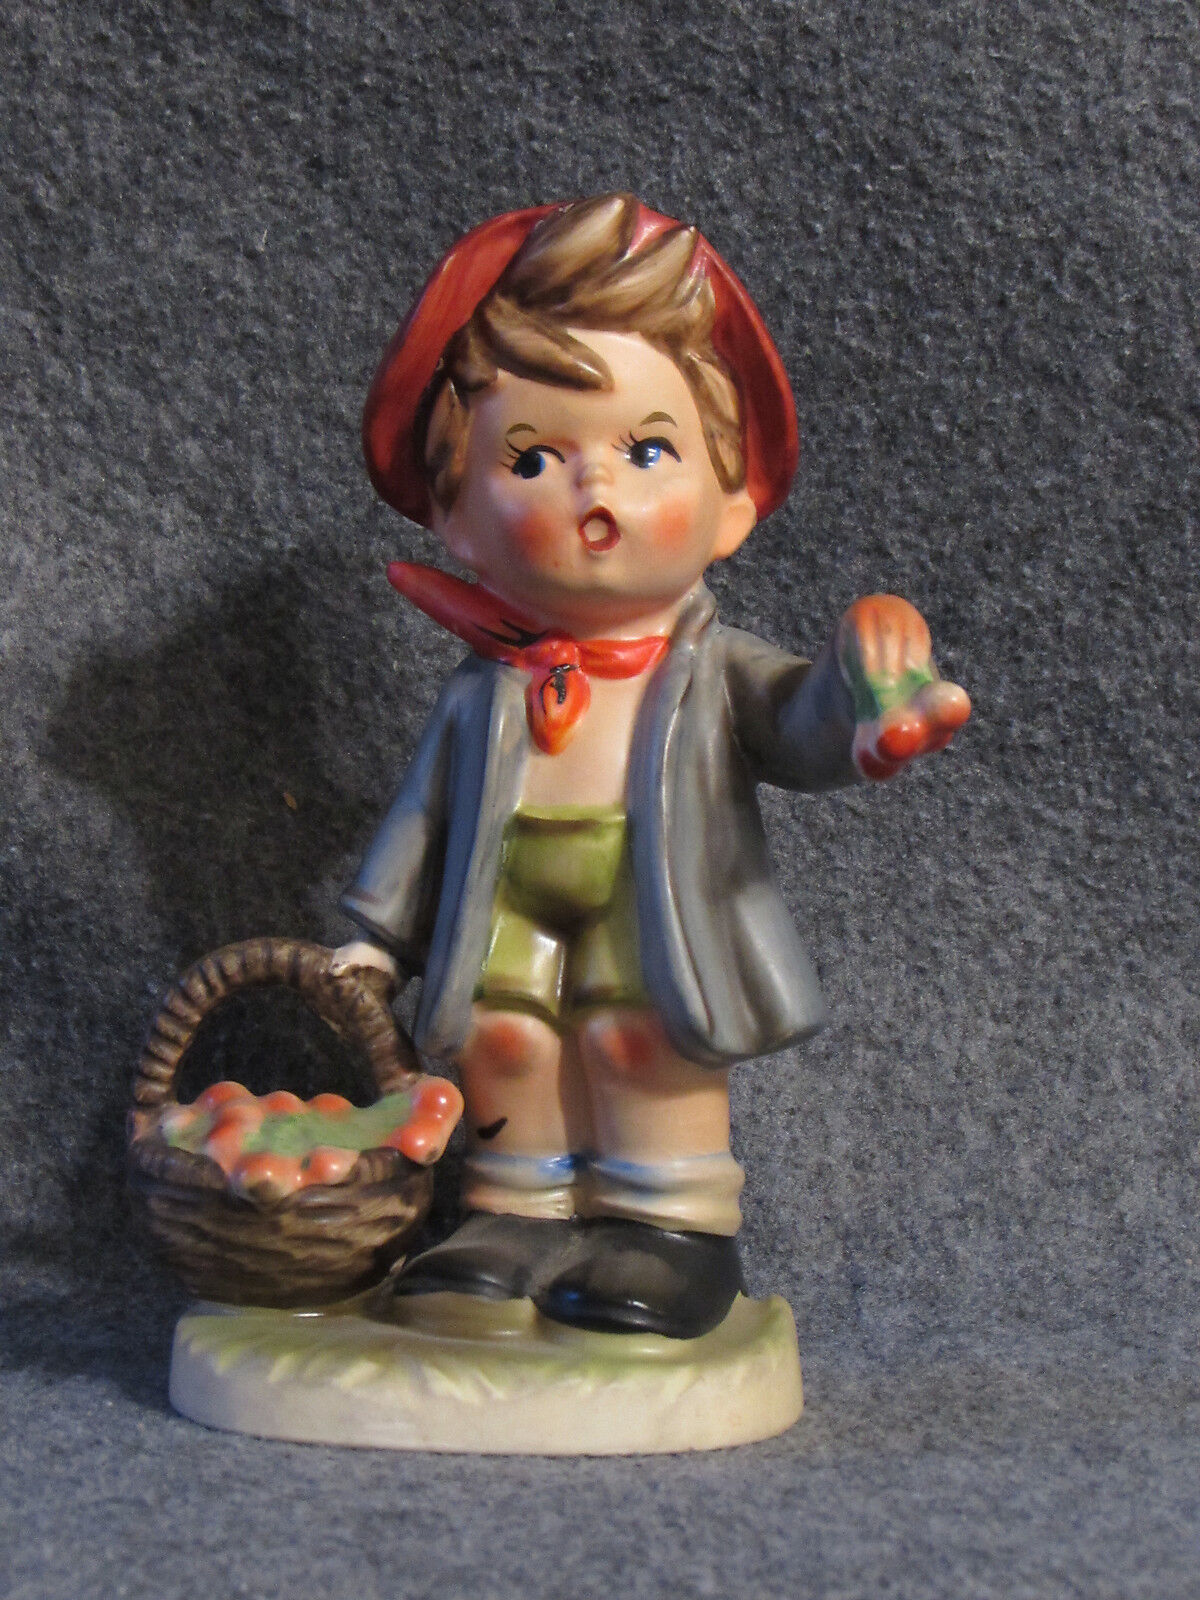 Vintage Napcoware 6 inch Ceramic Figurine C7656 Boy holding Fruit Basket Grapes